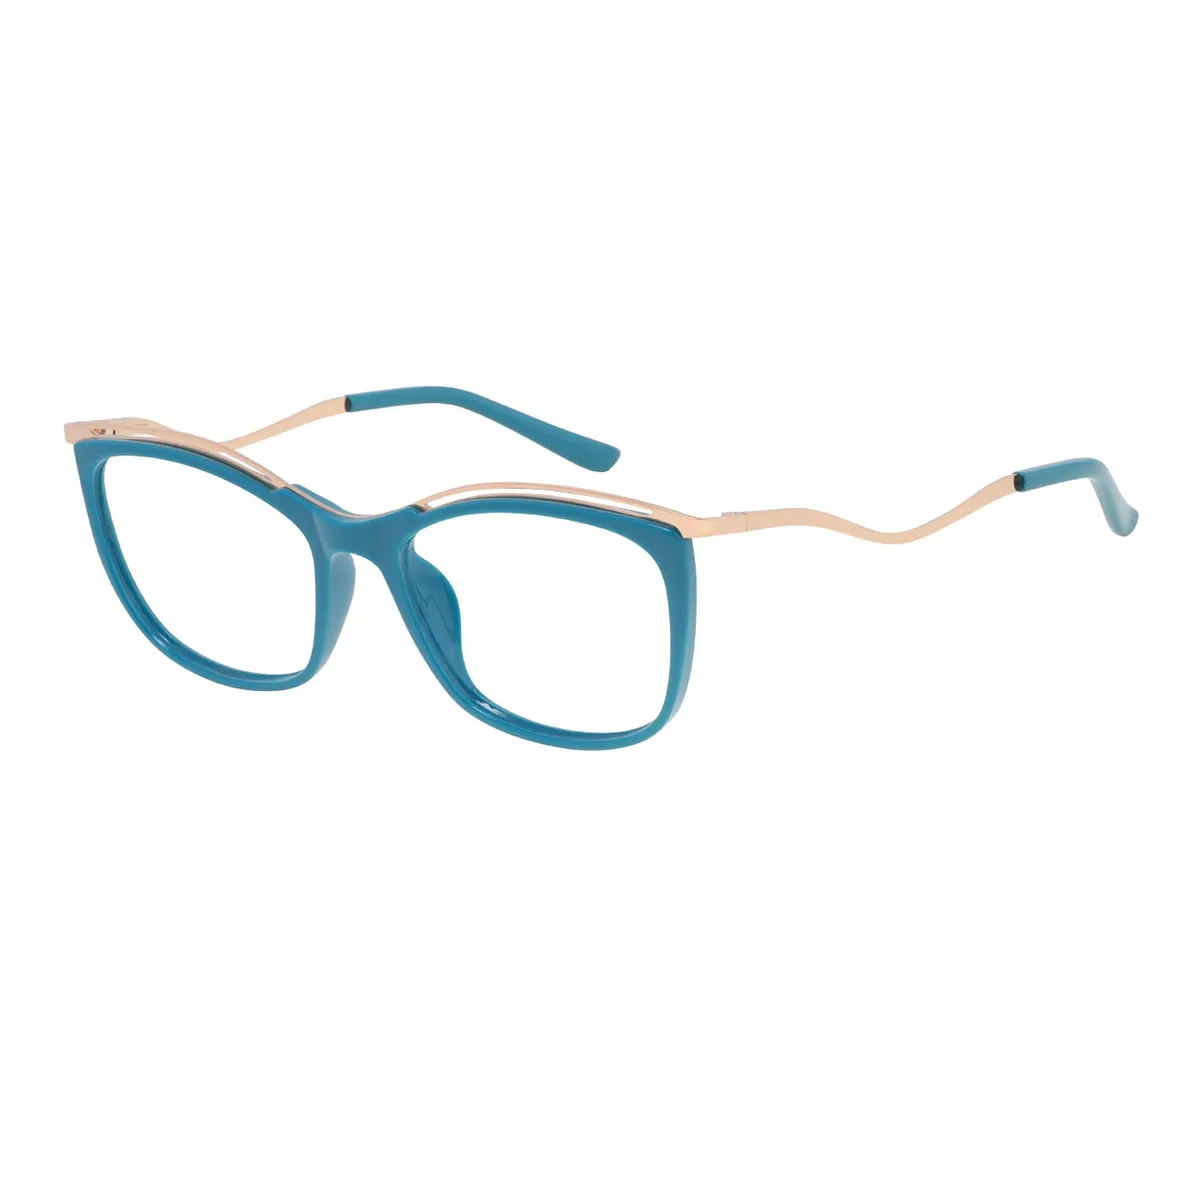 Kimberley - Square  Glasses for Women